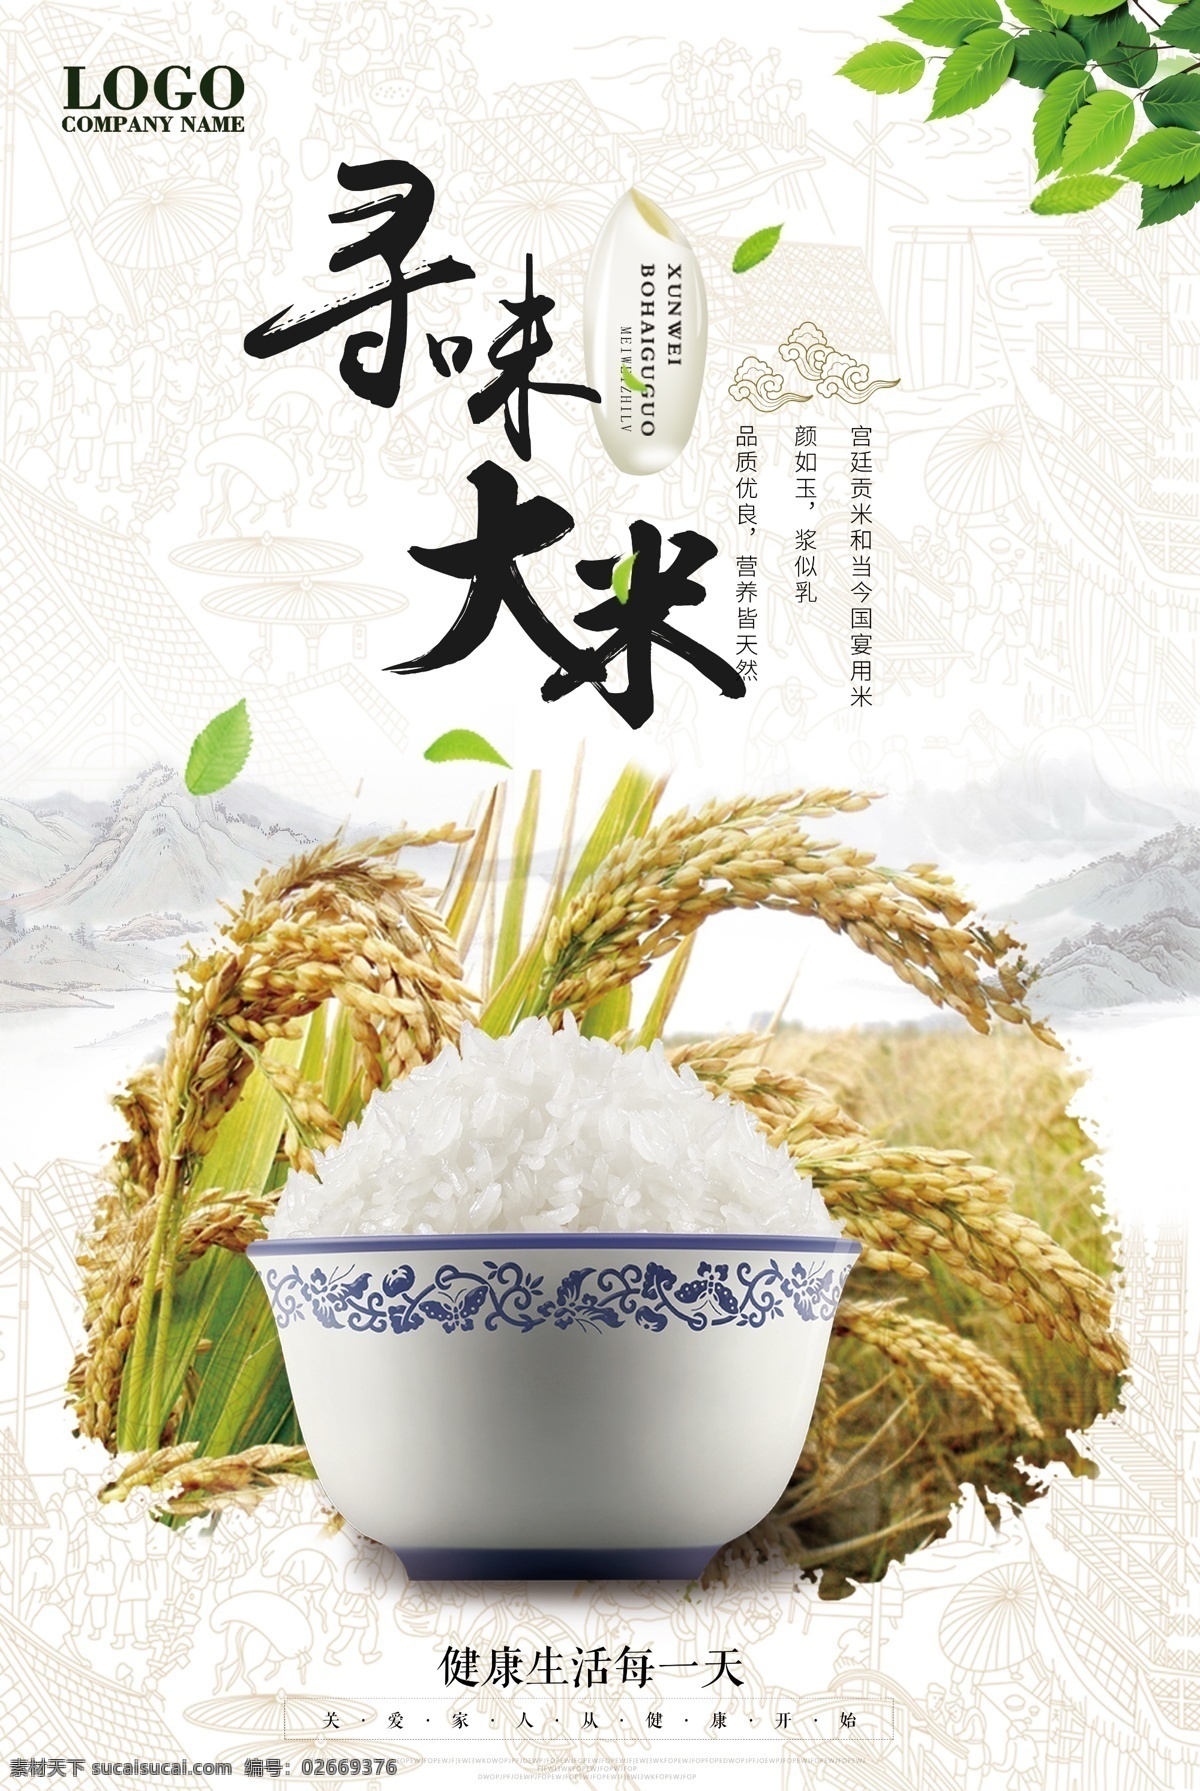 大米 创意 简约 海报 食物 主食 小麦 食品